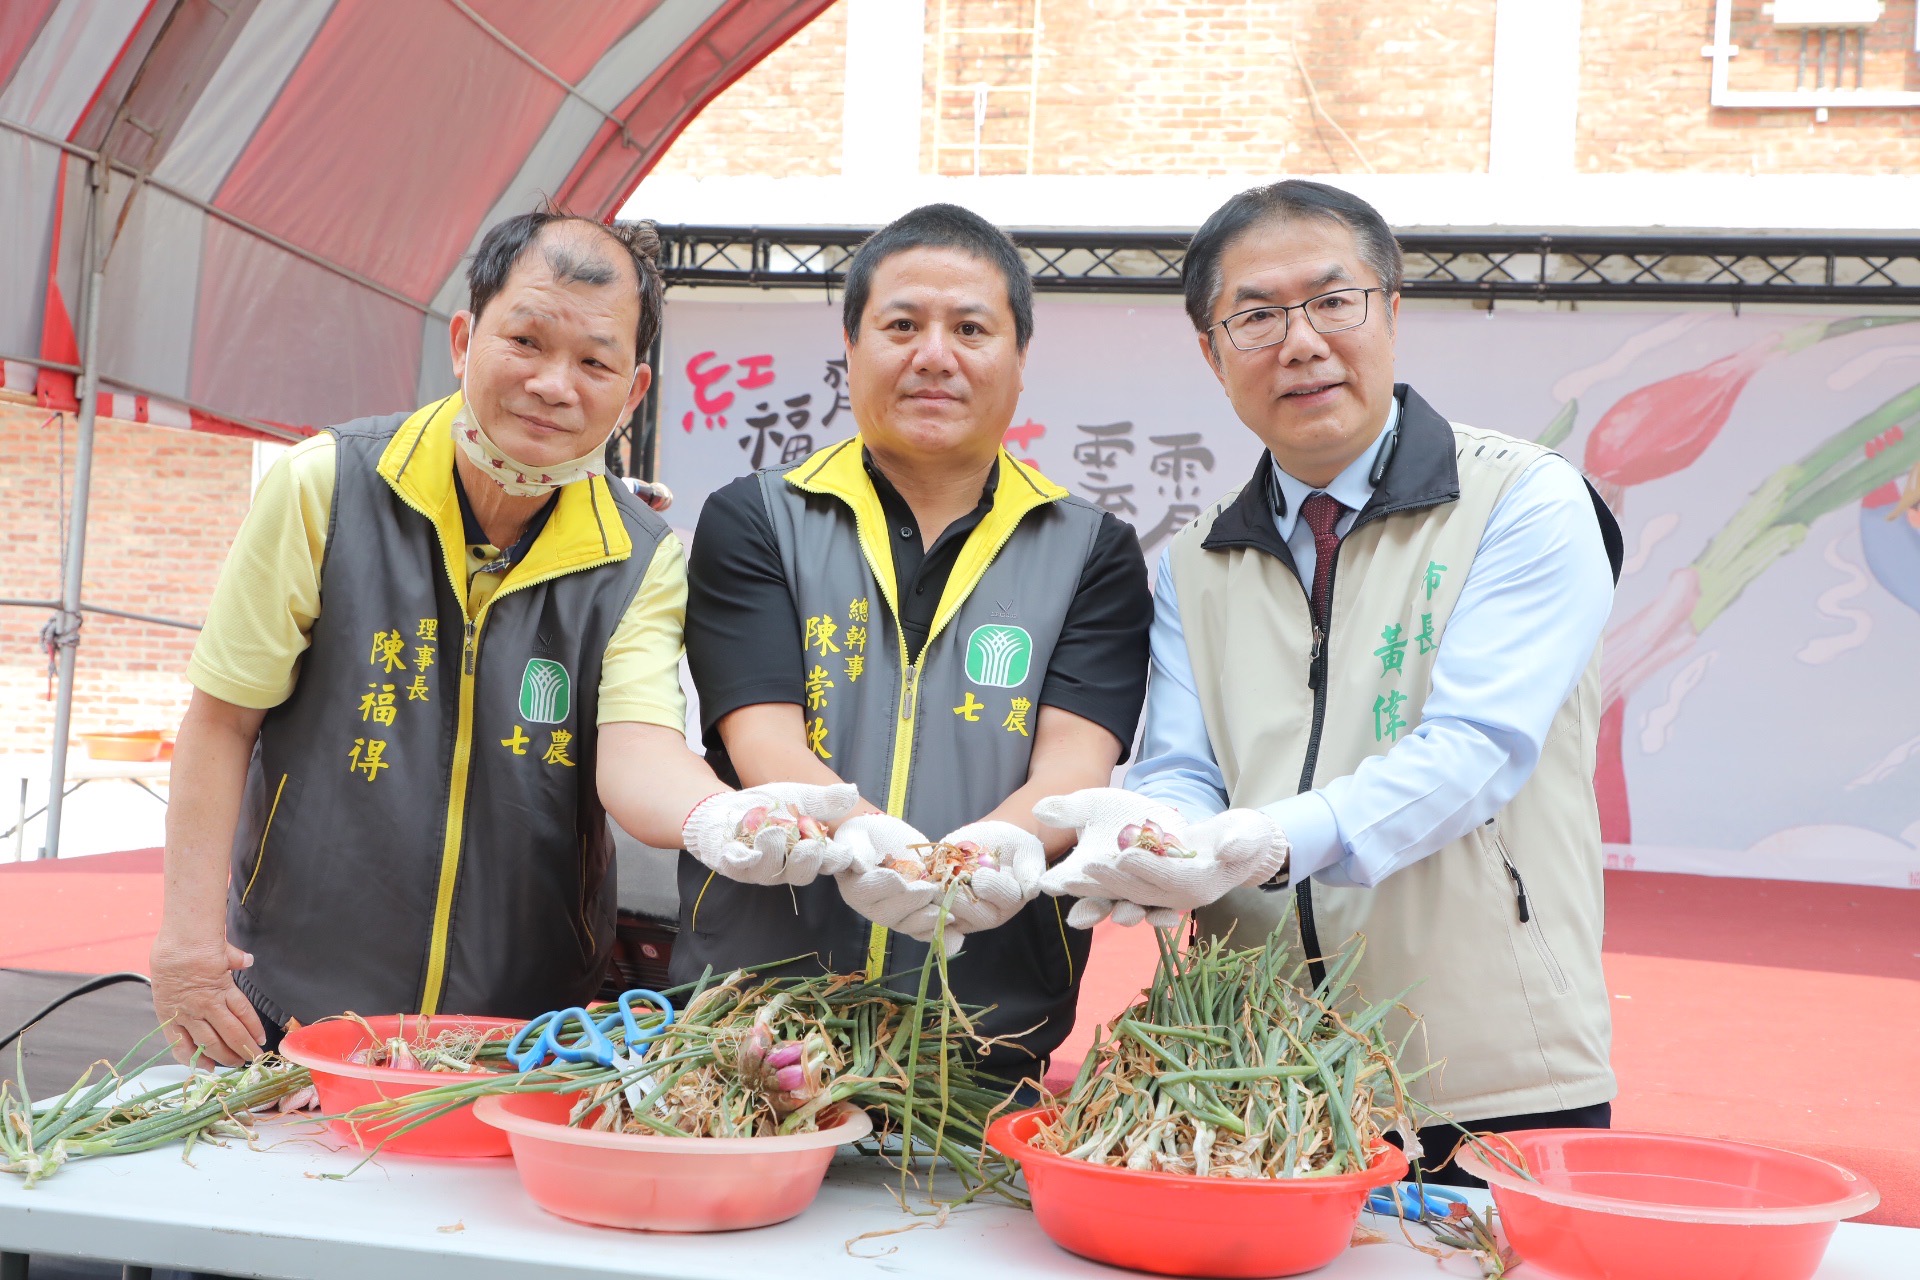 台南七股紅蔥頭產業文化活動今登場 黃偉哲邀民眾來場美味饗宴與農遊體驗